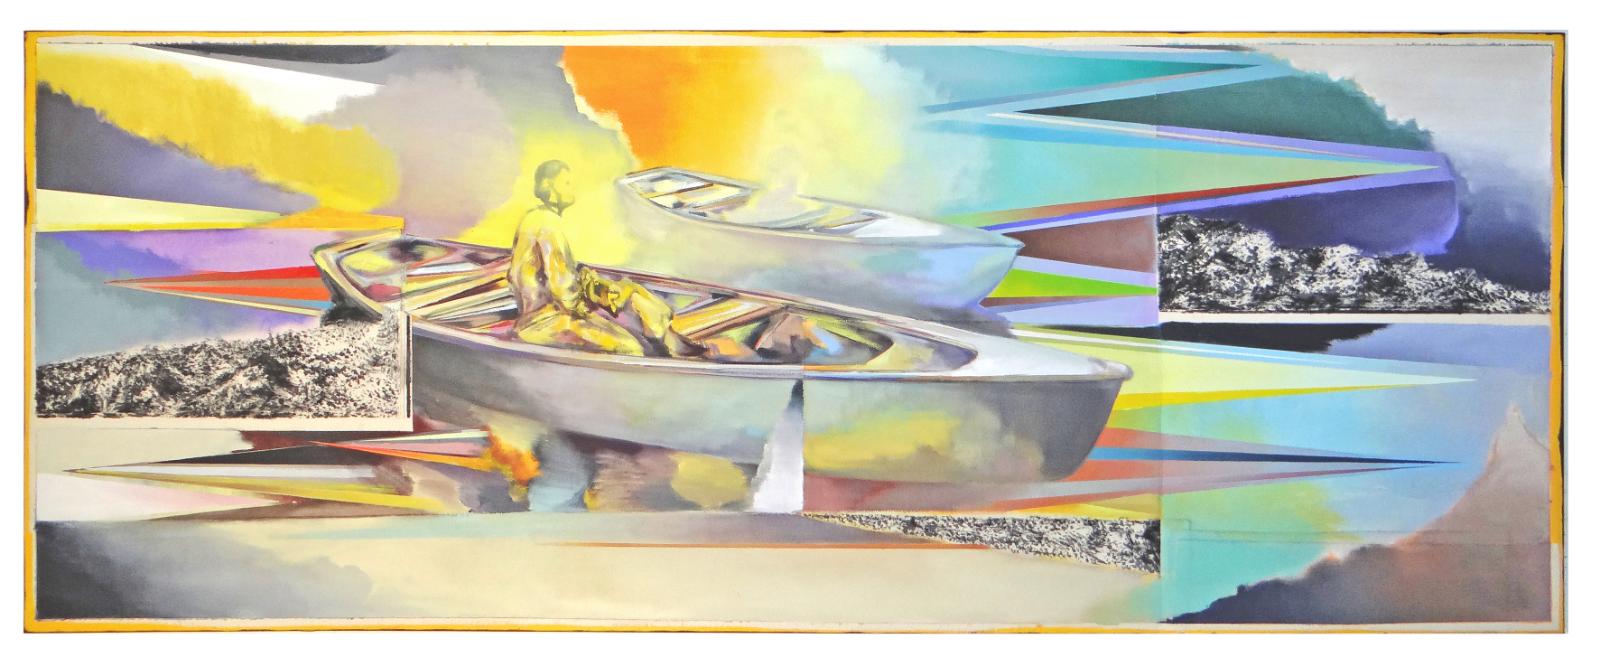 Christofer Kochs, Neue Seltsamkeit, 2020, Öl auf gefalteter Leinwand, 80 x 210 cm, Preis auf Anfrage